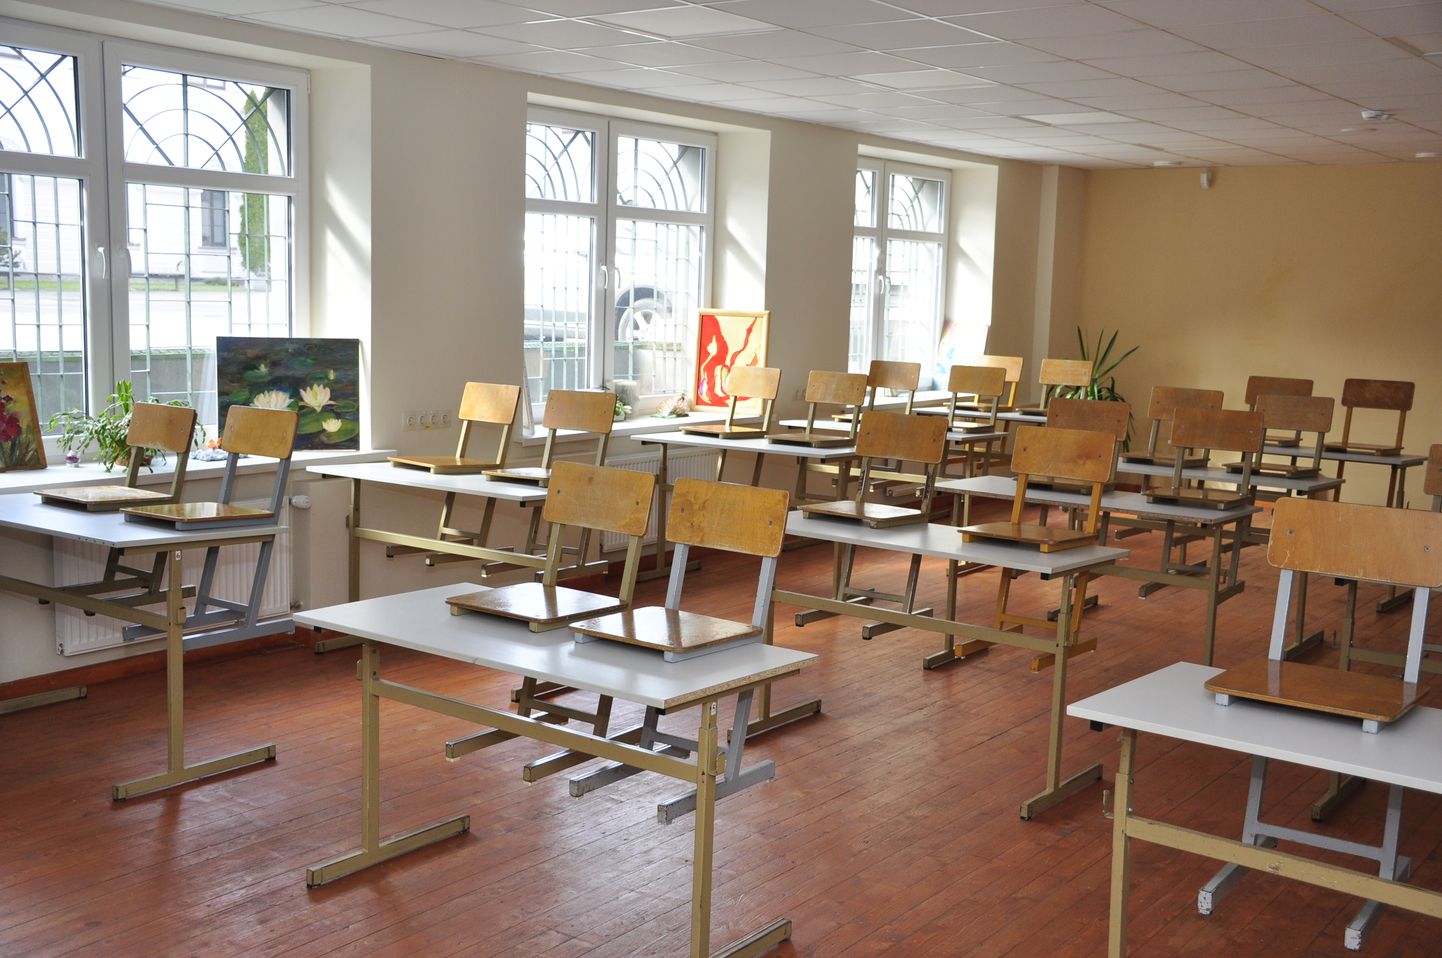 Пустой школьный класс. Иллюстративное фото